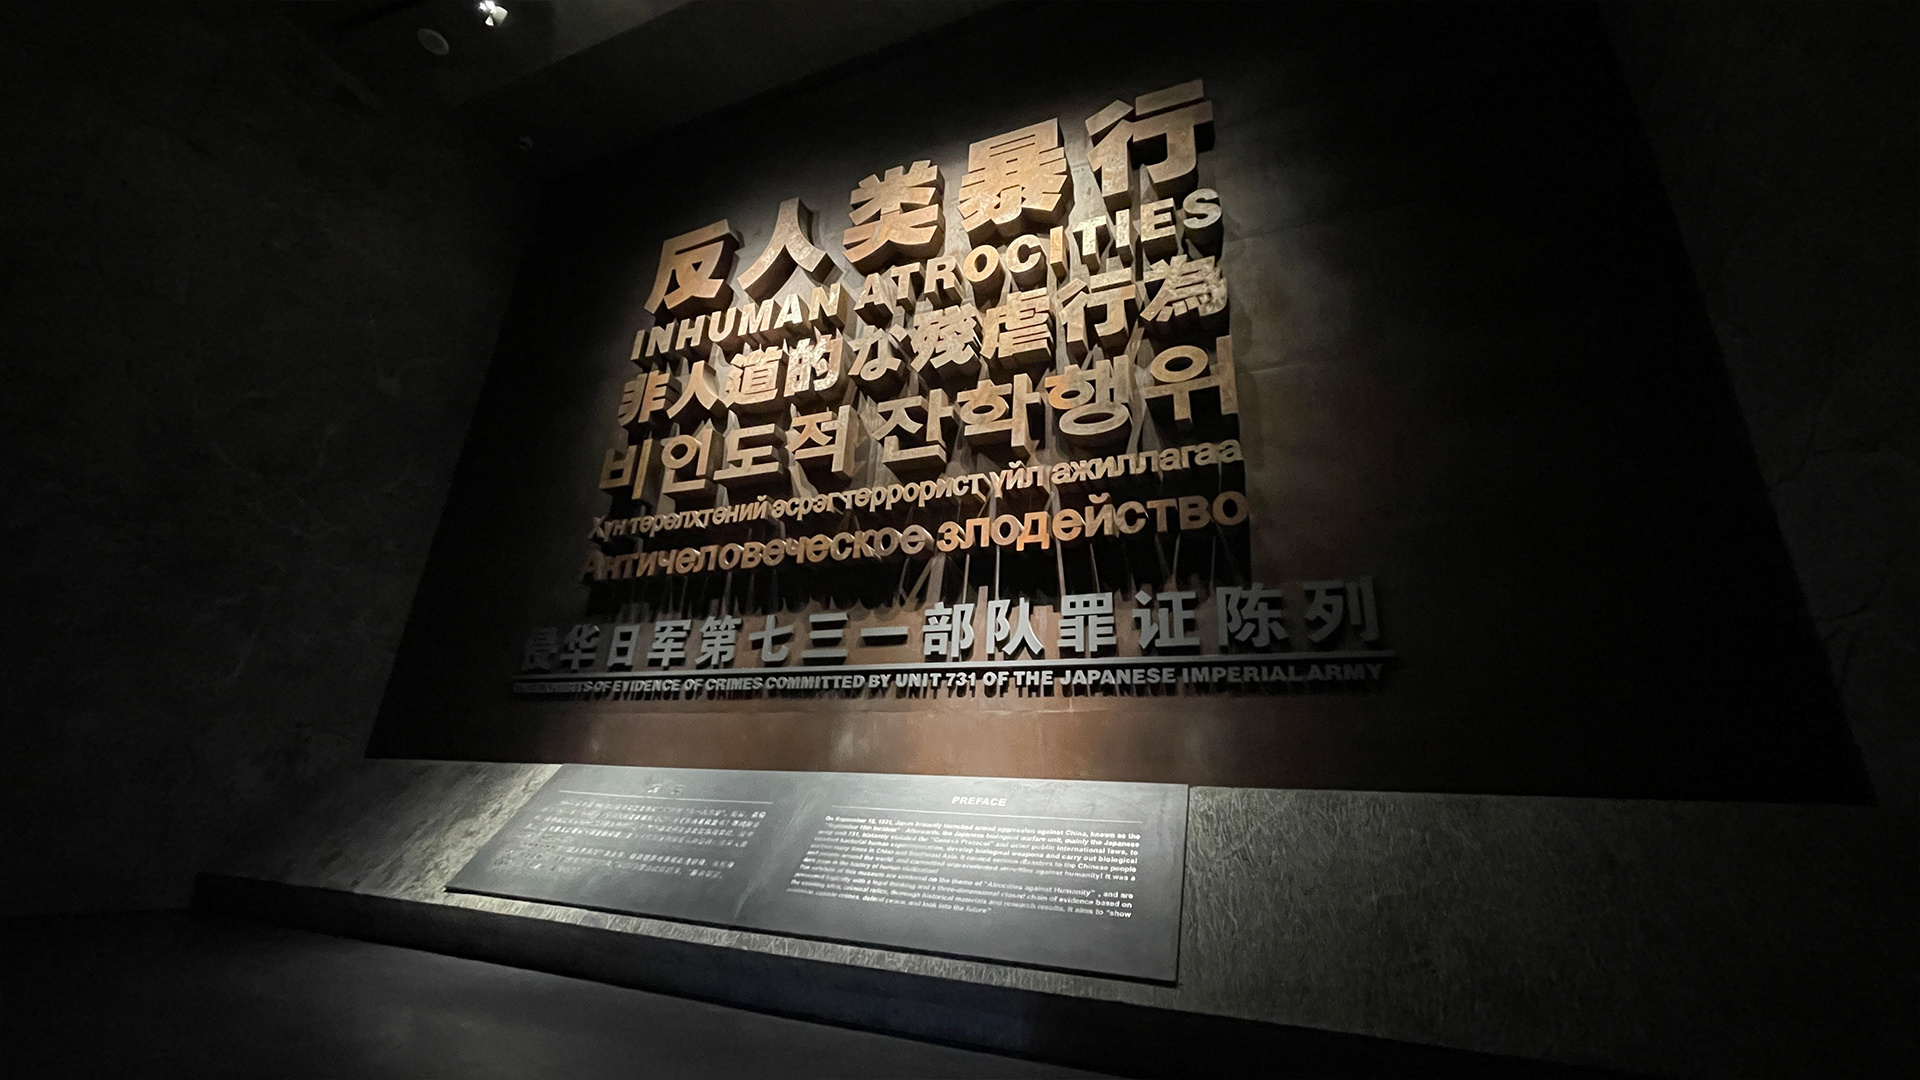 【携程攻略】哈尔滨731部队罪证遗址景点,血淋淋的历史陈列 看完让人心情沉重 不是很出名的旅游景点 但是应该…